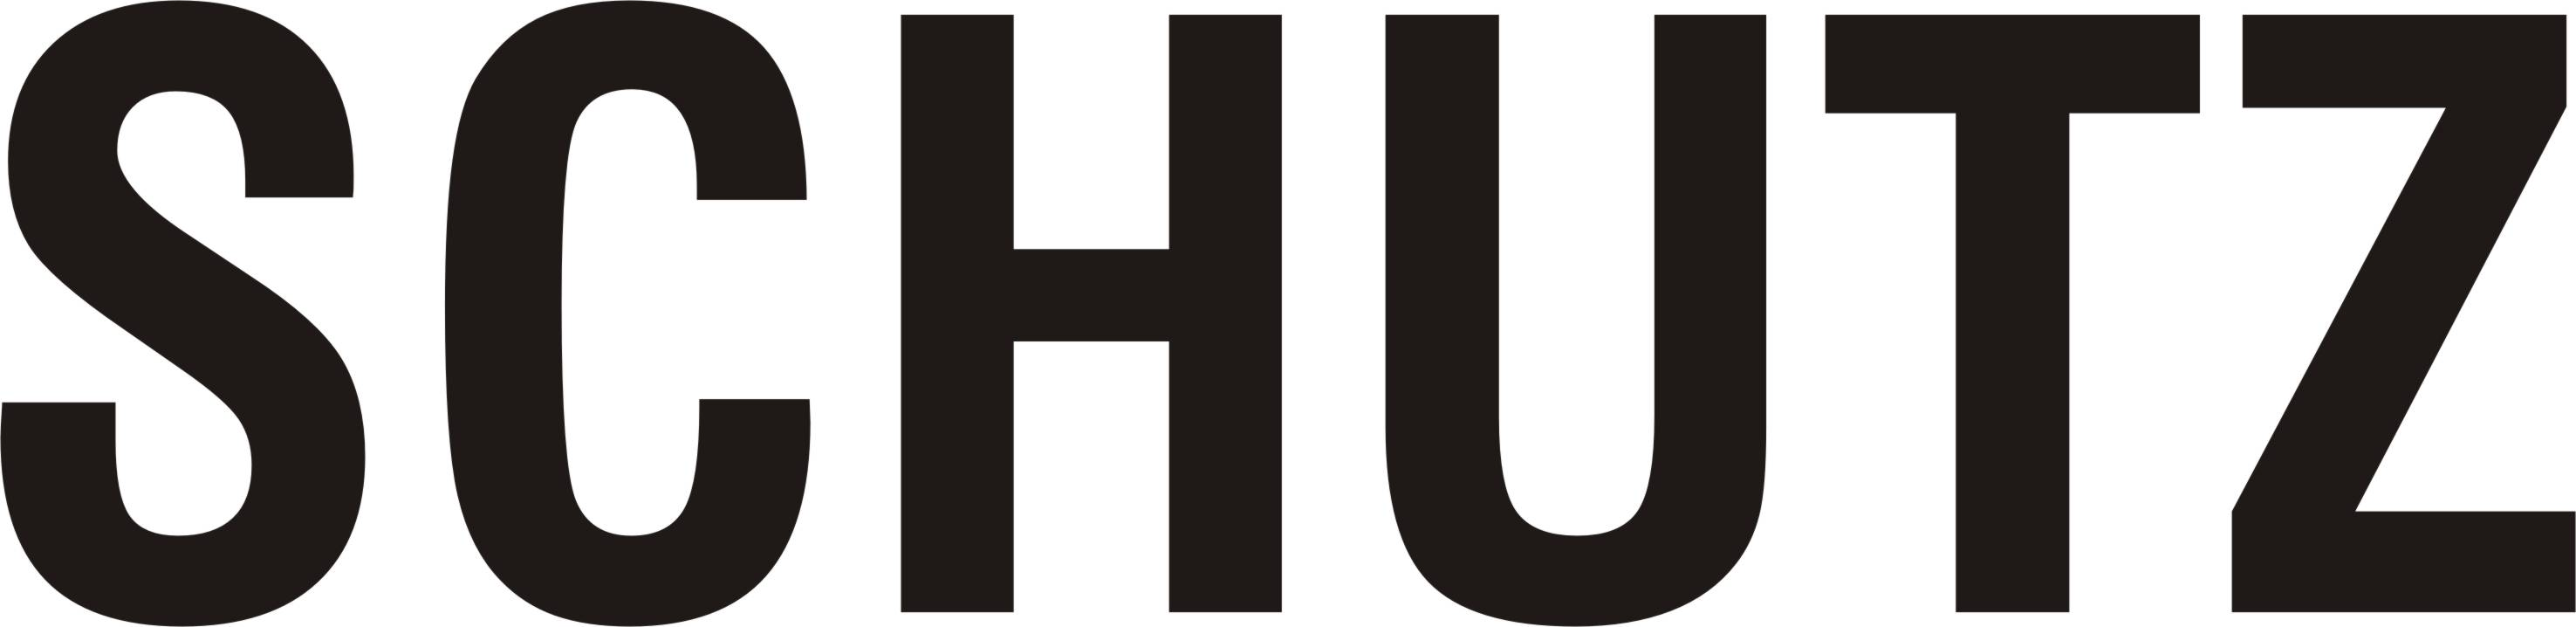 Schutz Logo - Because. – SCHUTZ